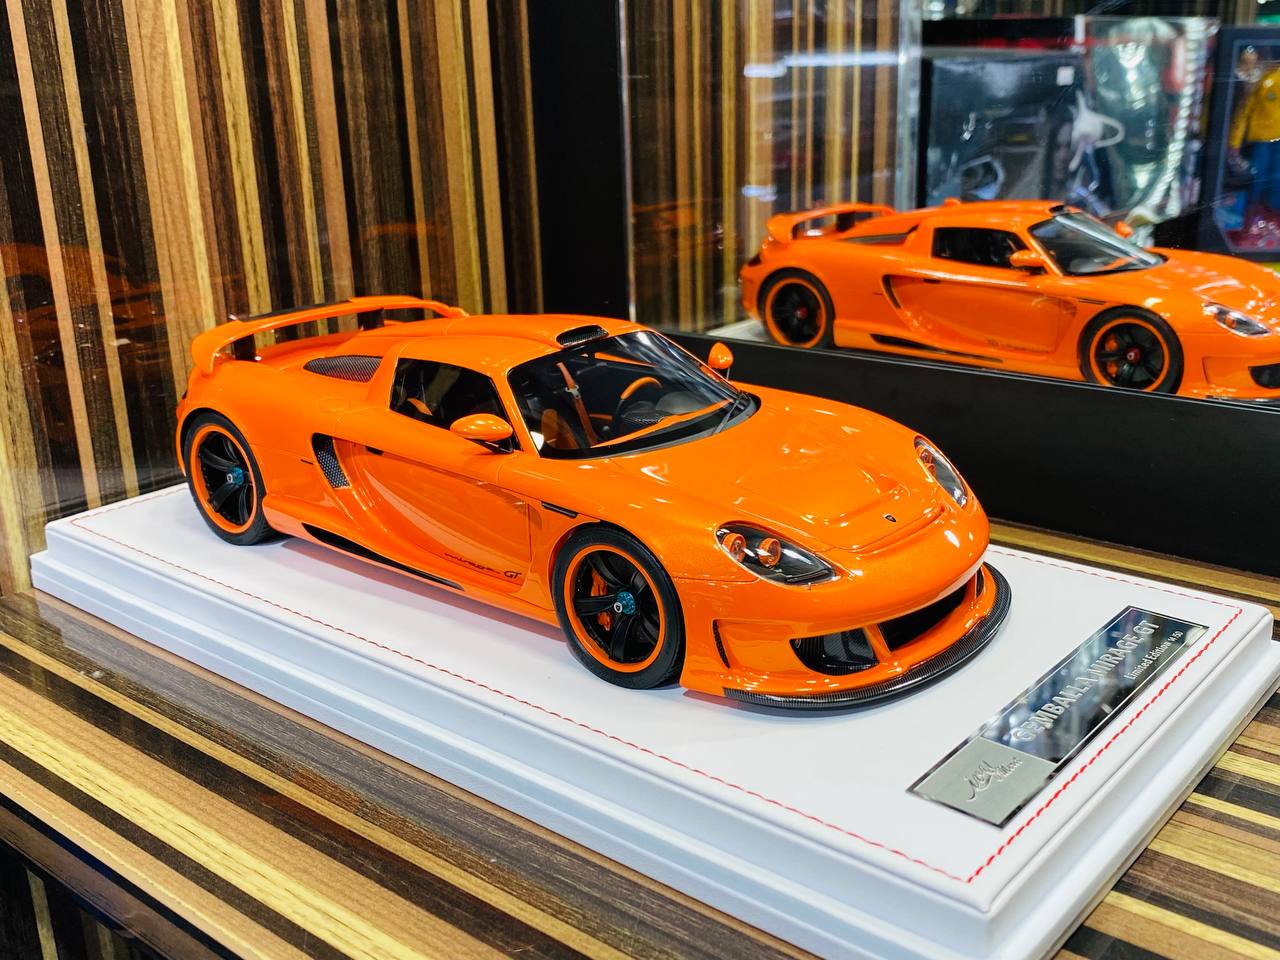 Exclusive IVY Models Gemballa MIRAGE GT Resin Model - Arancio Atlas (Orange) | Limited Edition